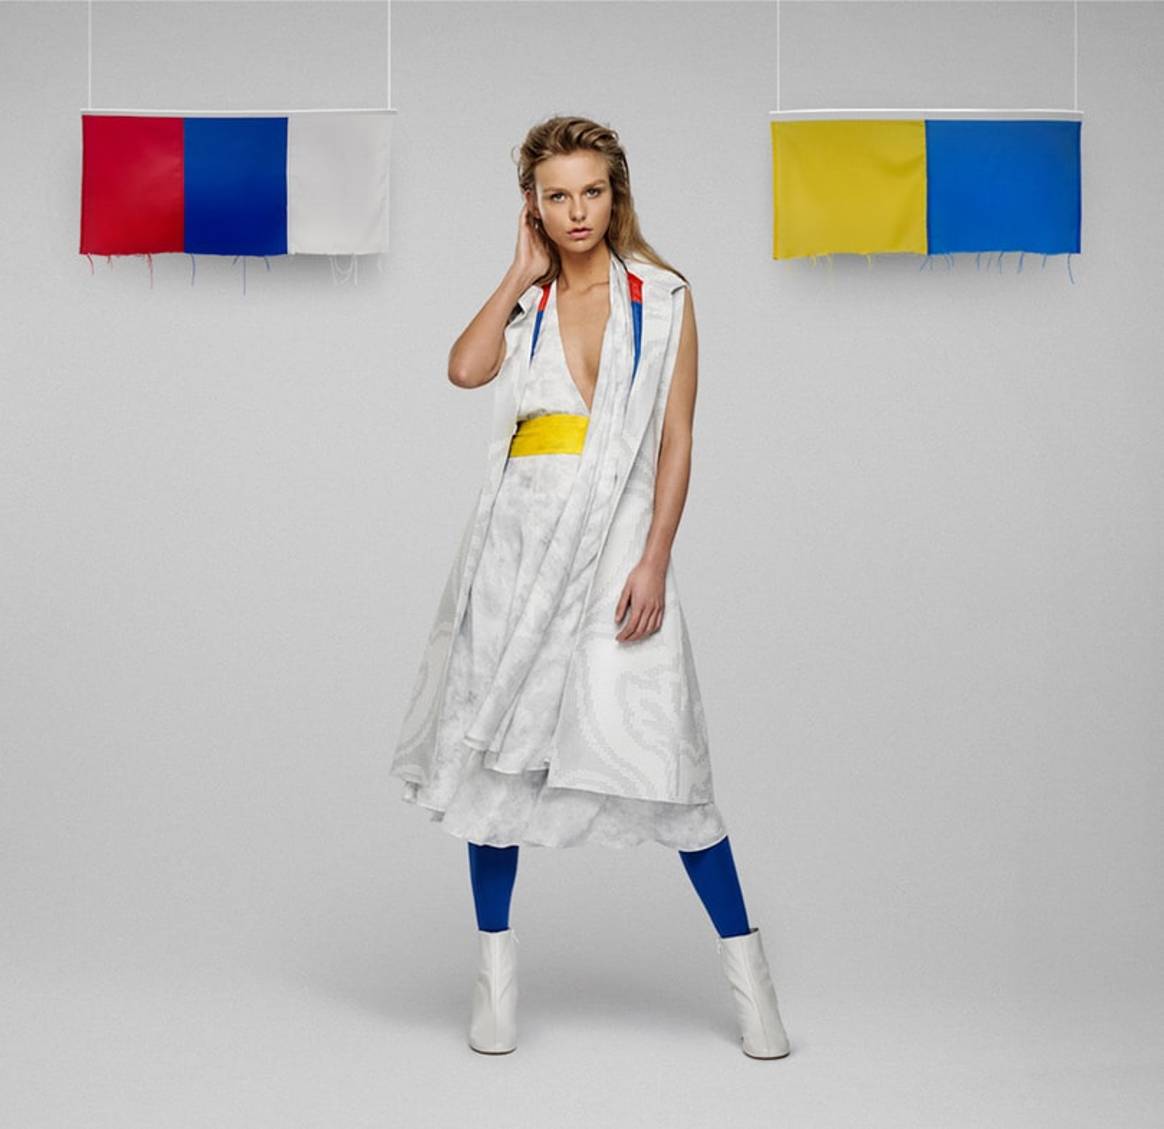 Mode van vlaggen: de 'United Collection' van Young Designers United